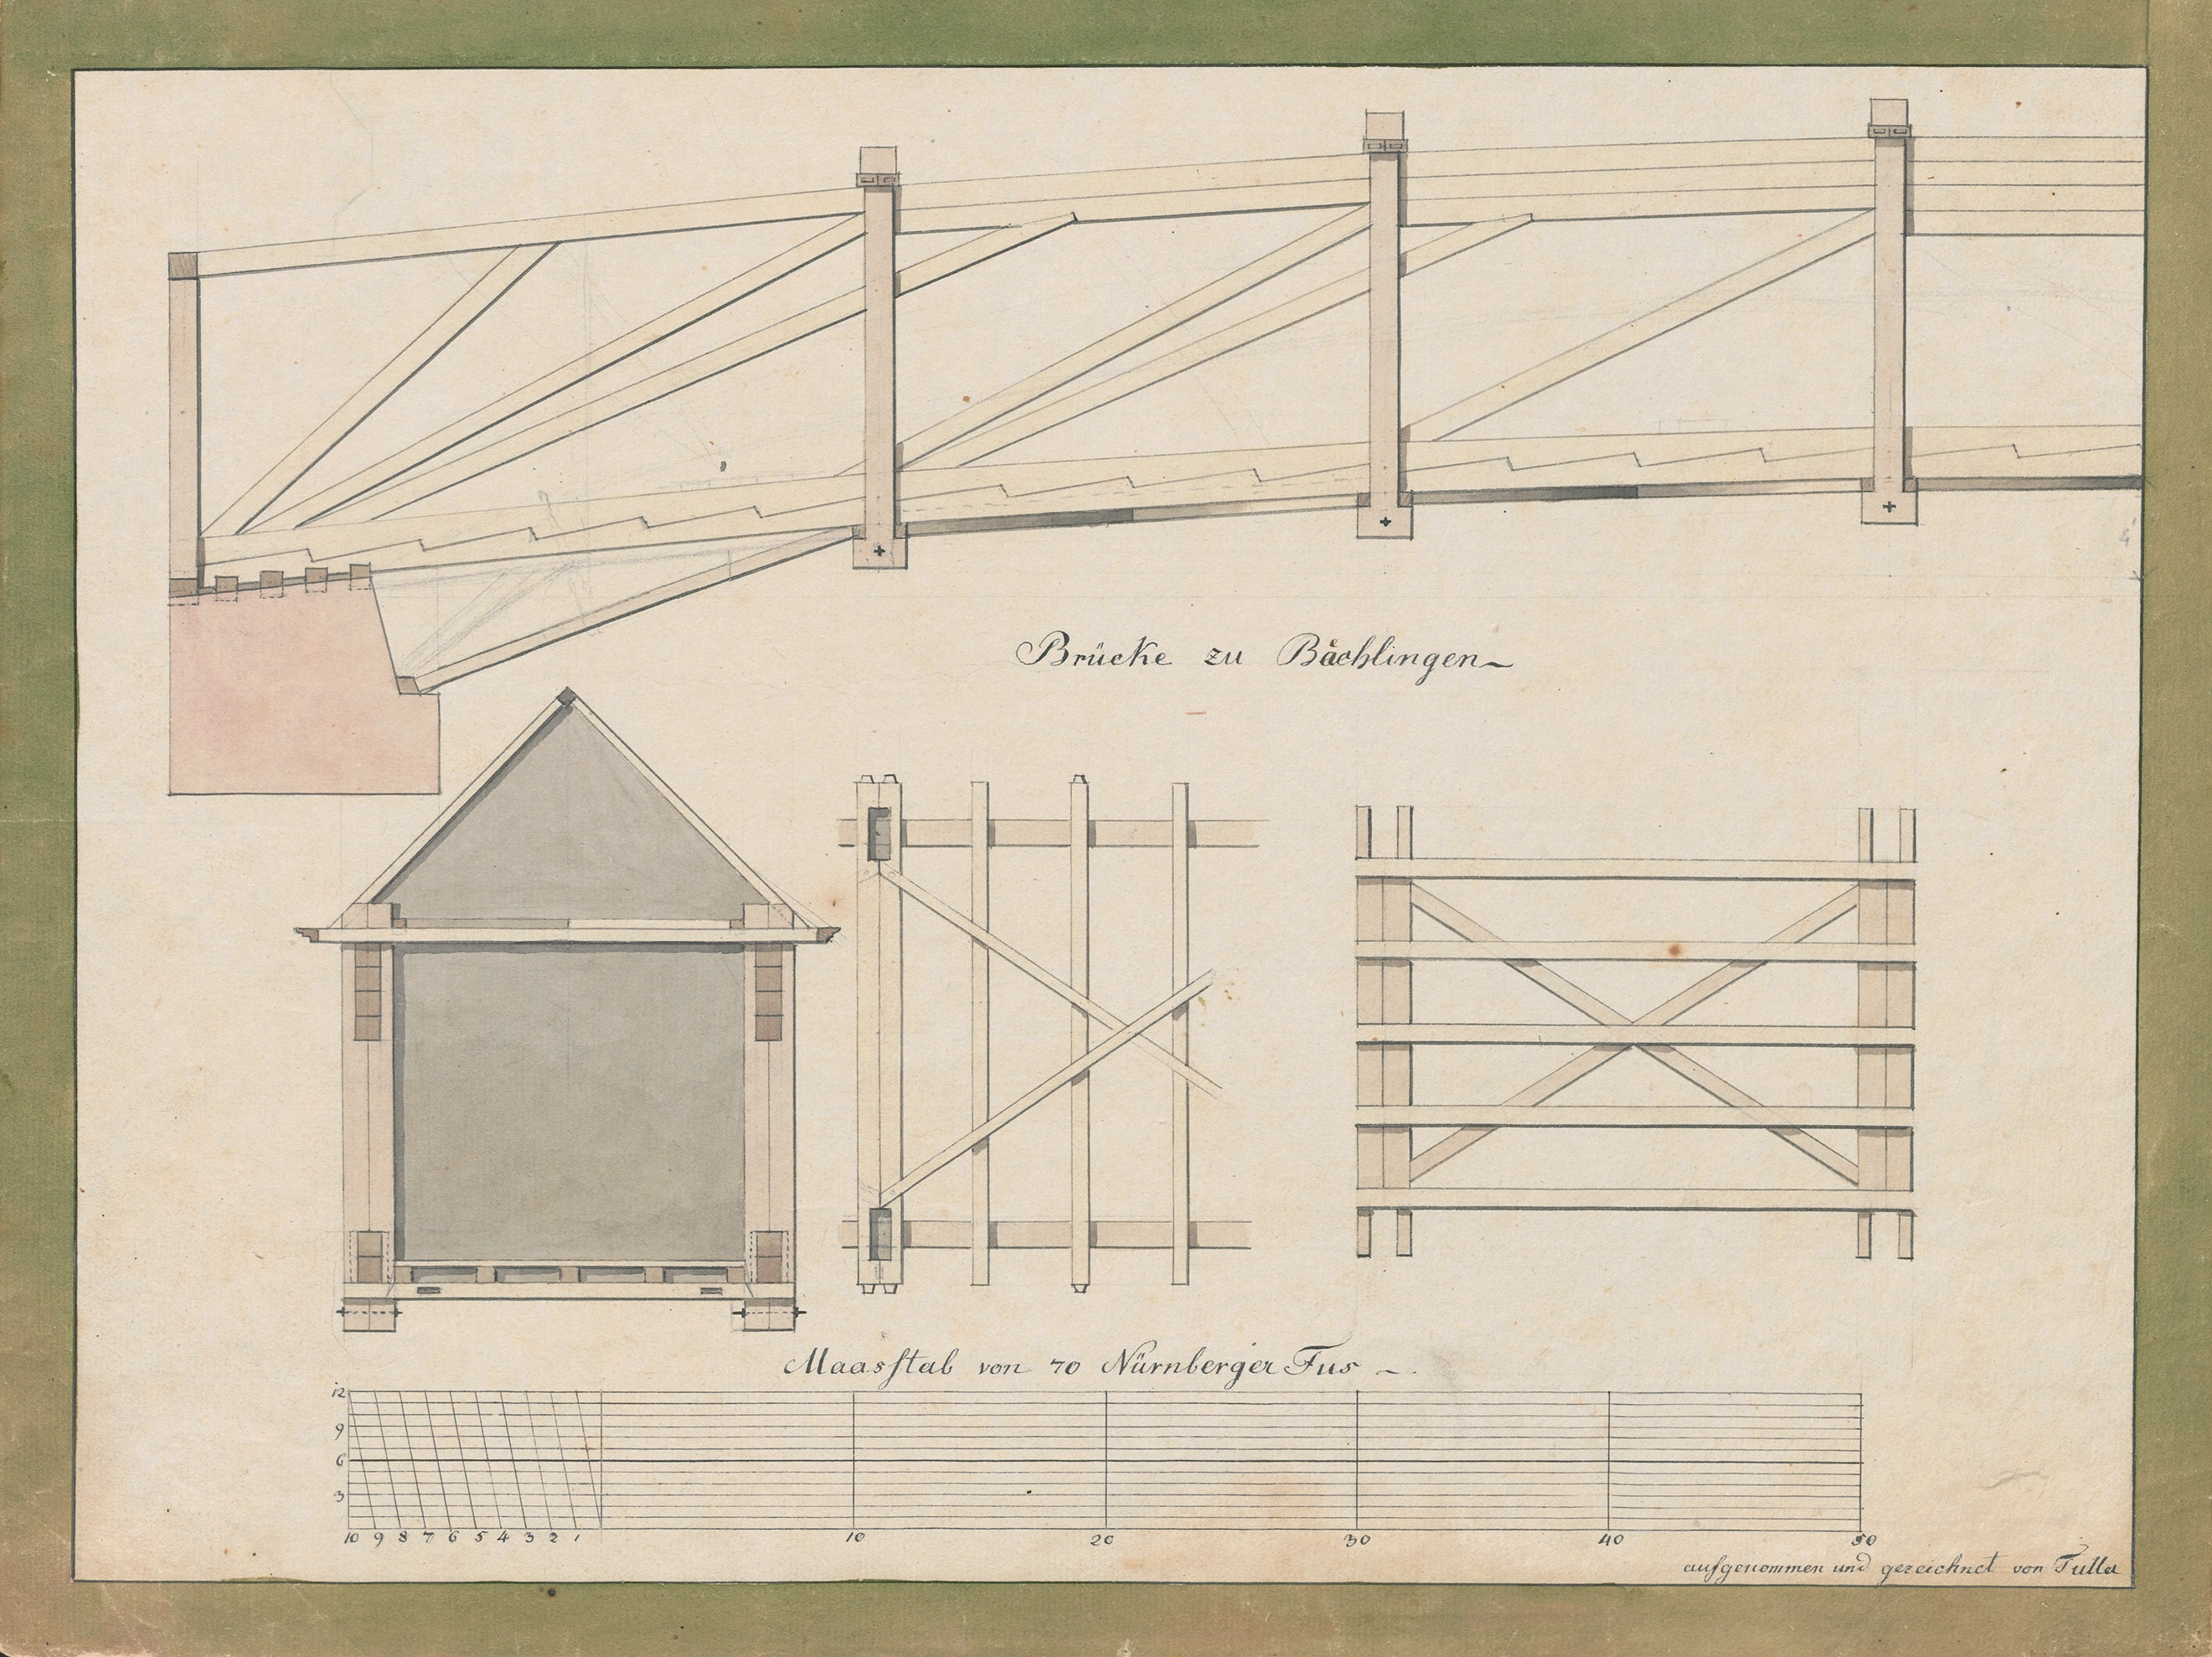 Entwurf einer Brücker von Johann Gottfried Tulla